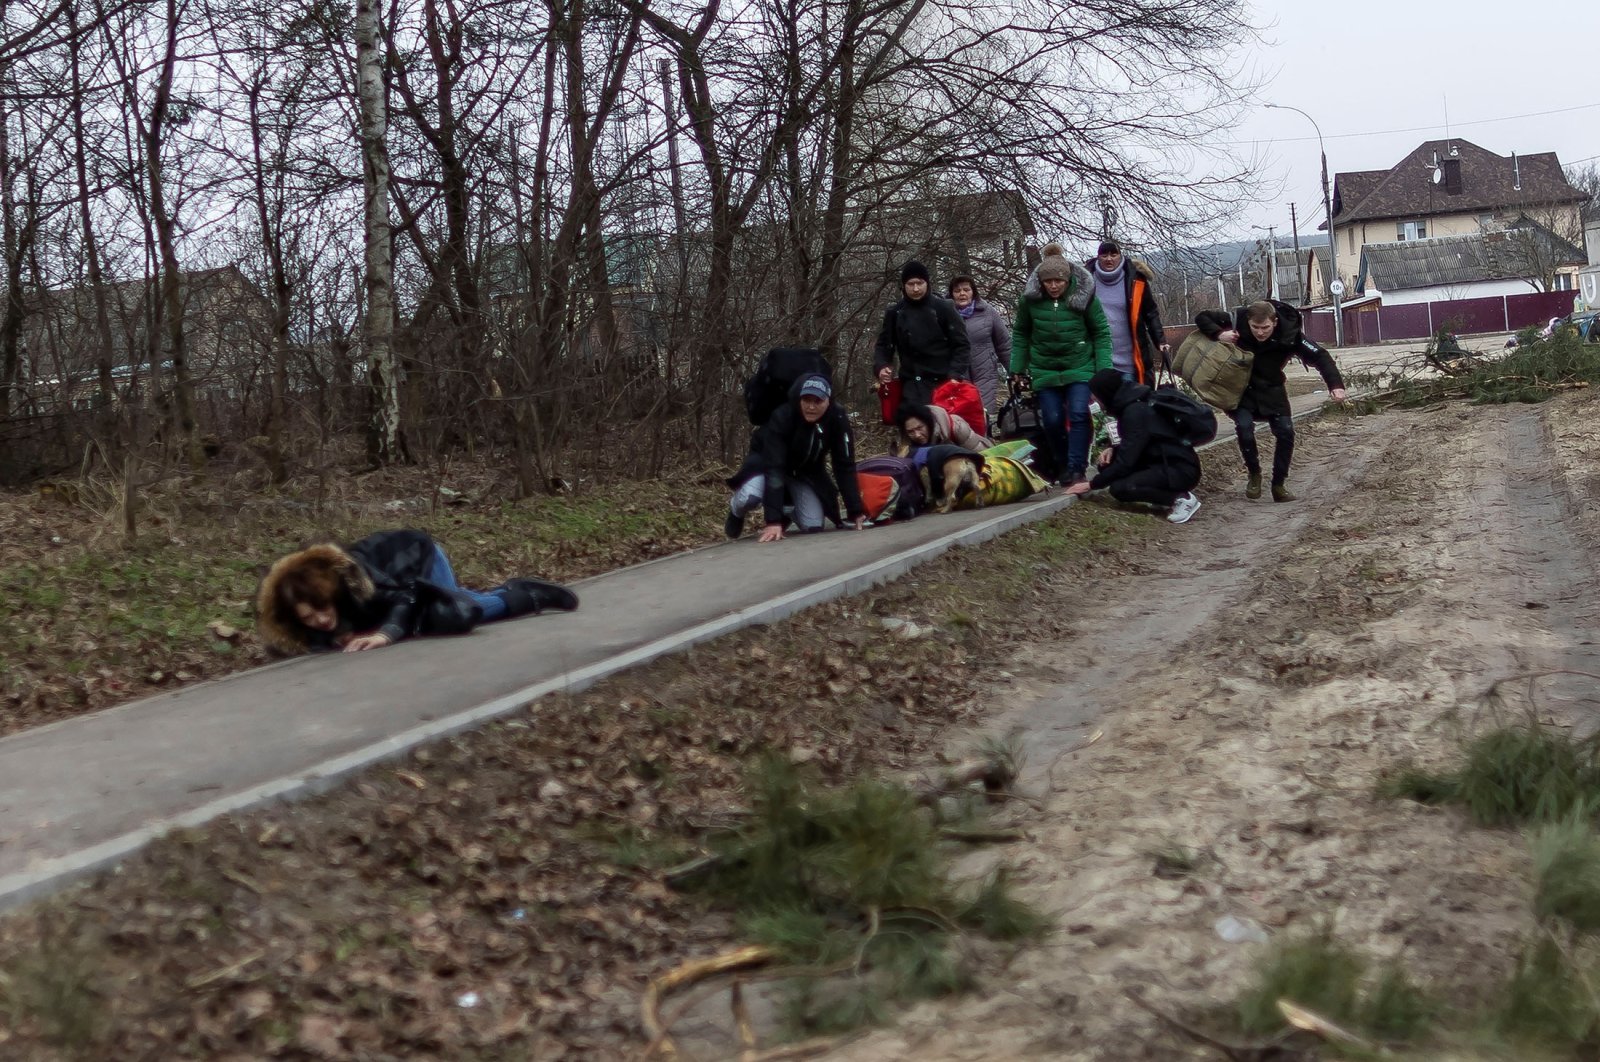 Orang-orang terperangkap dalam penembakan akhir pekan saat melarikan diri dari kota di Ukraina